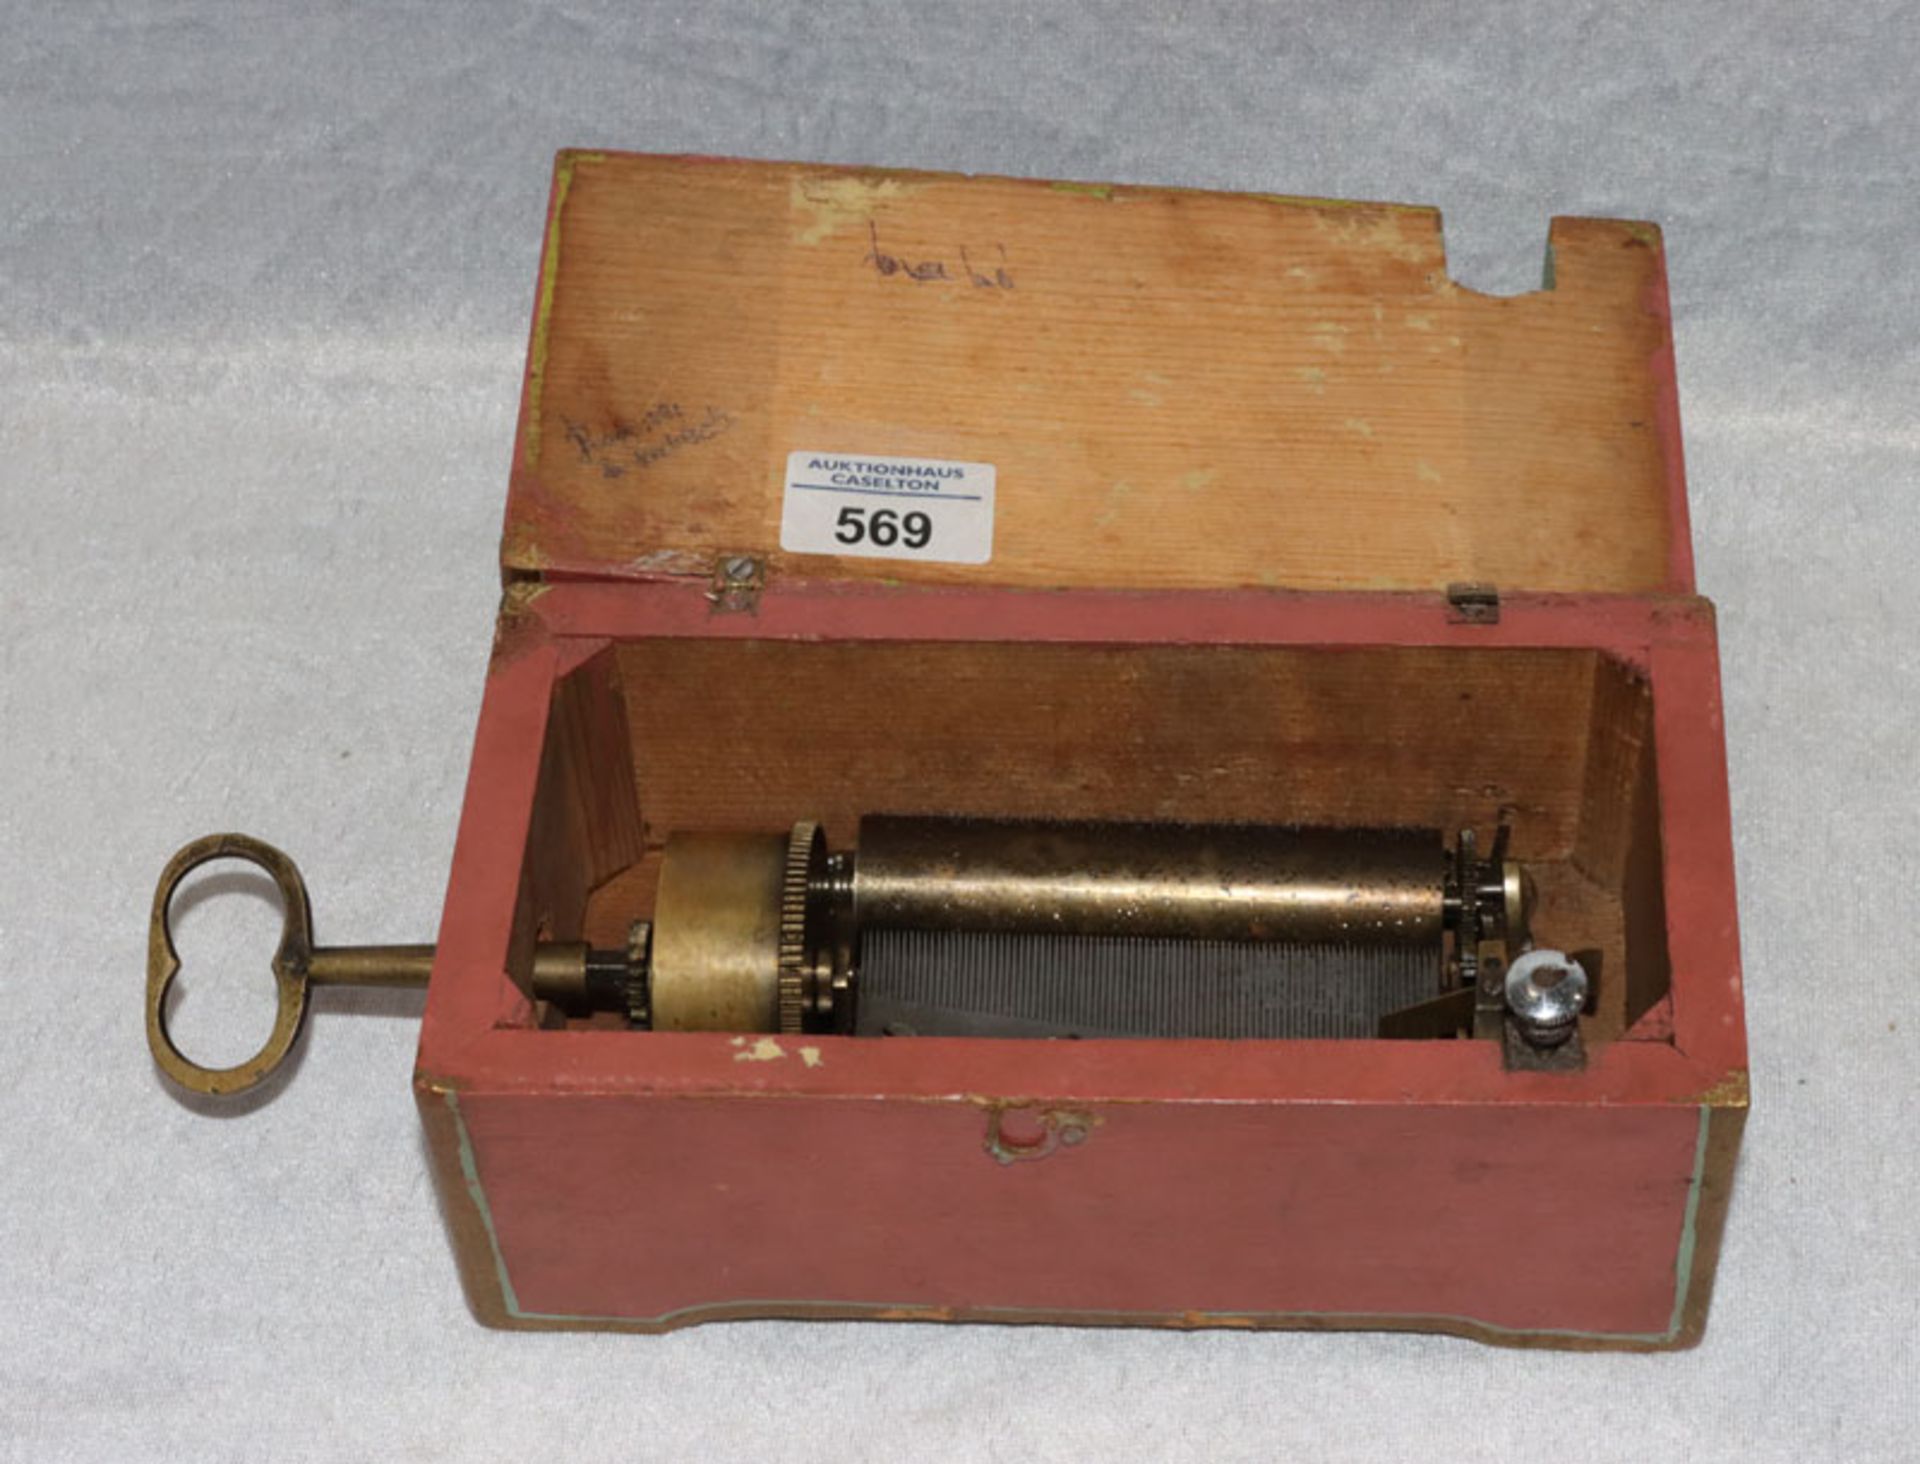 Spieluhr in Holzkasten, spielt 2 Melodien, Kamm nicht beschädigt, um 1900, H 9 cm, B 22 cm, T 11 cm,